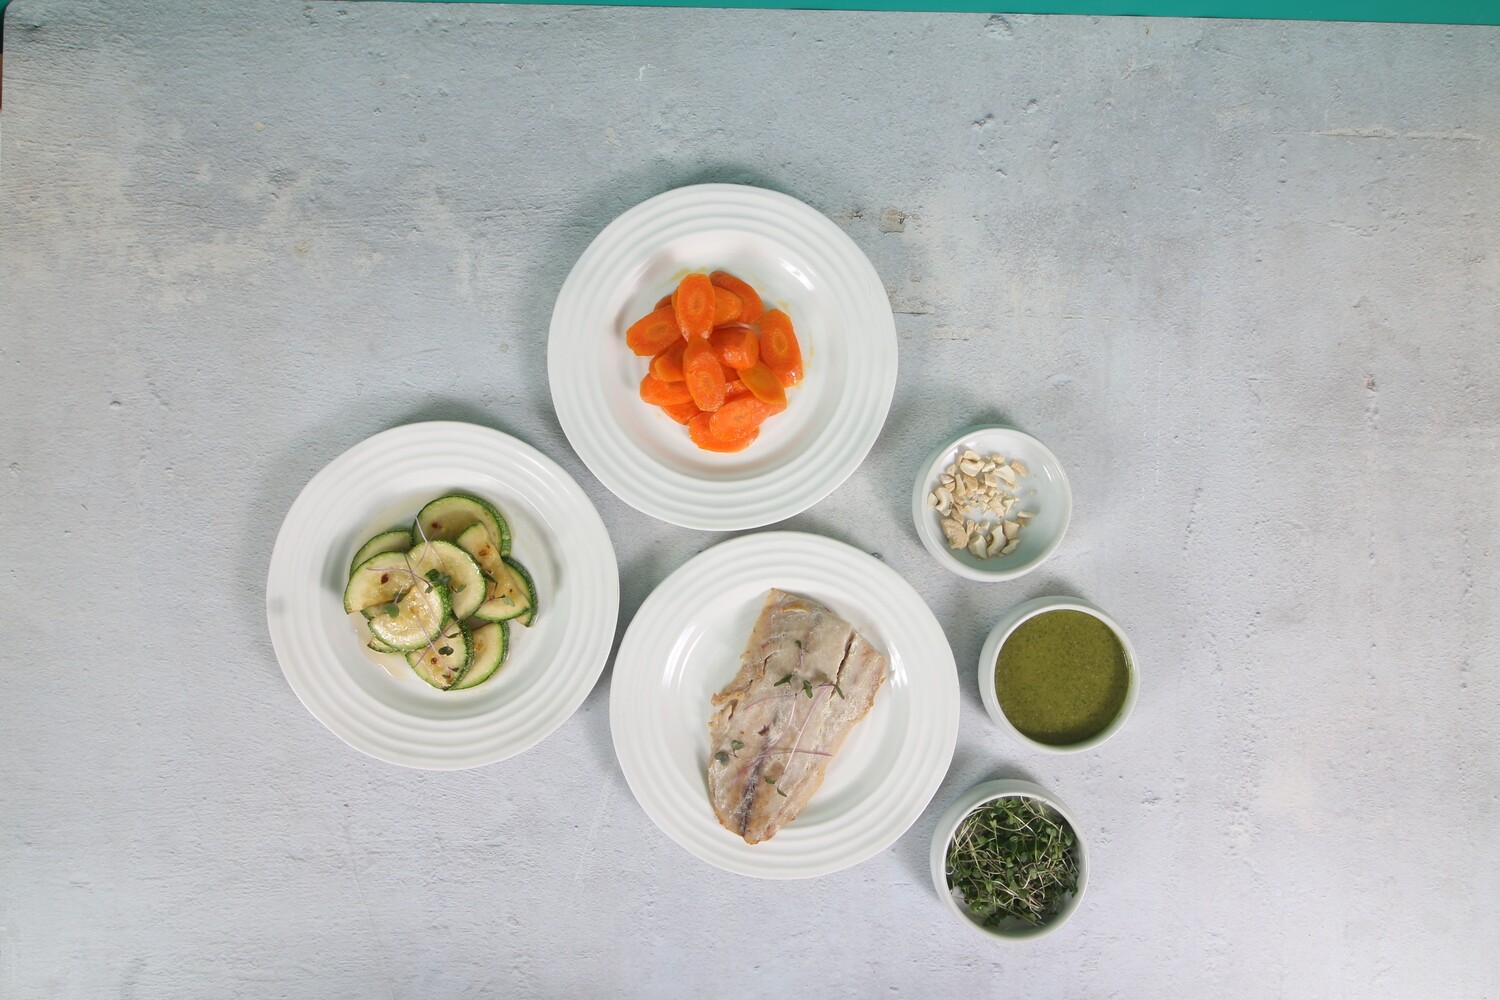 Huachinango en salsa cilantro acompañado de zanahoria, calabaza adornado con nuez de la India y  microverdes